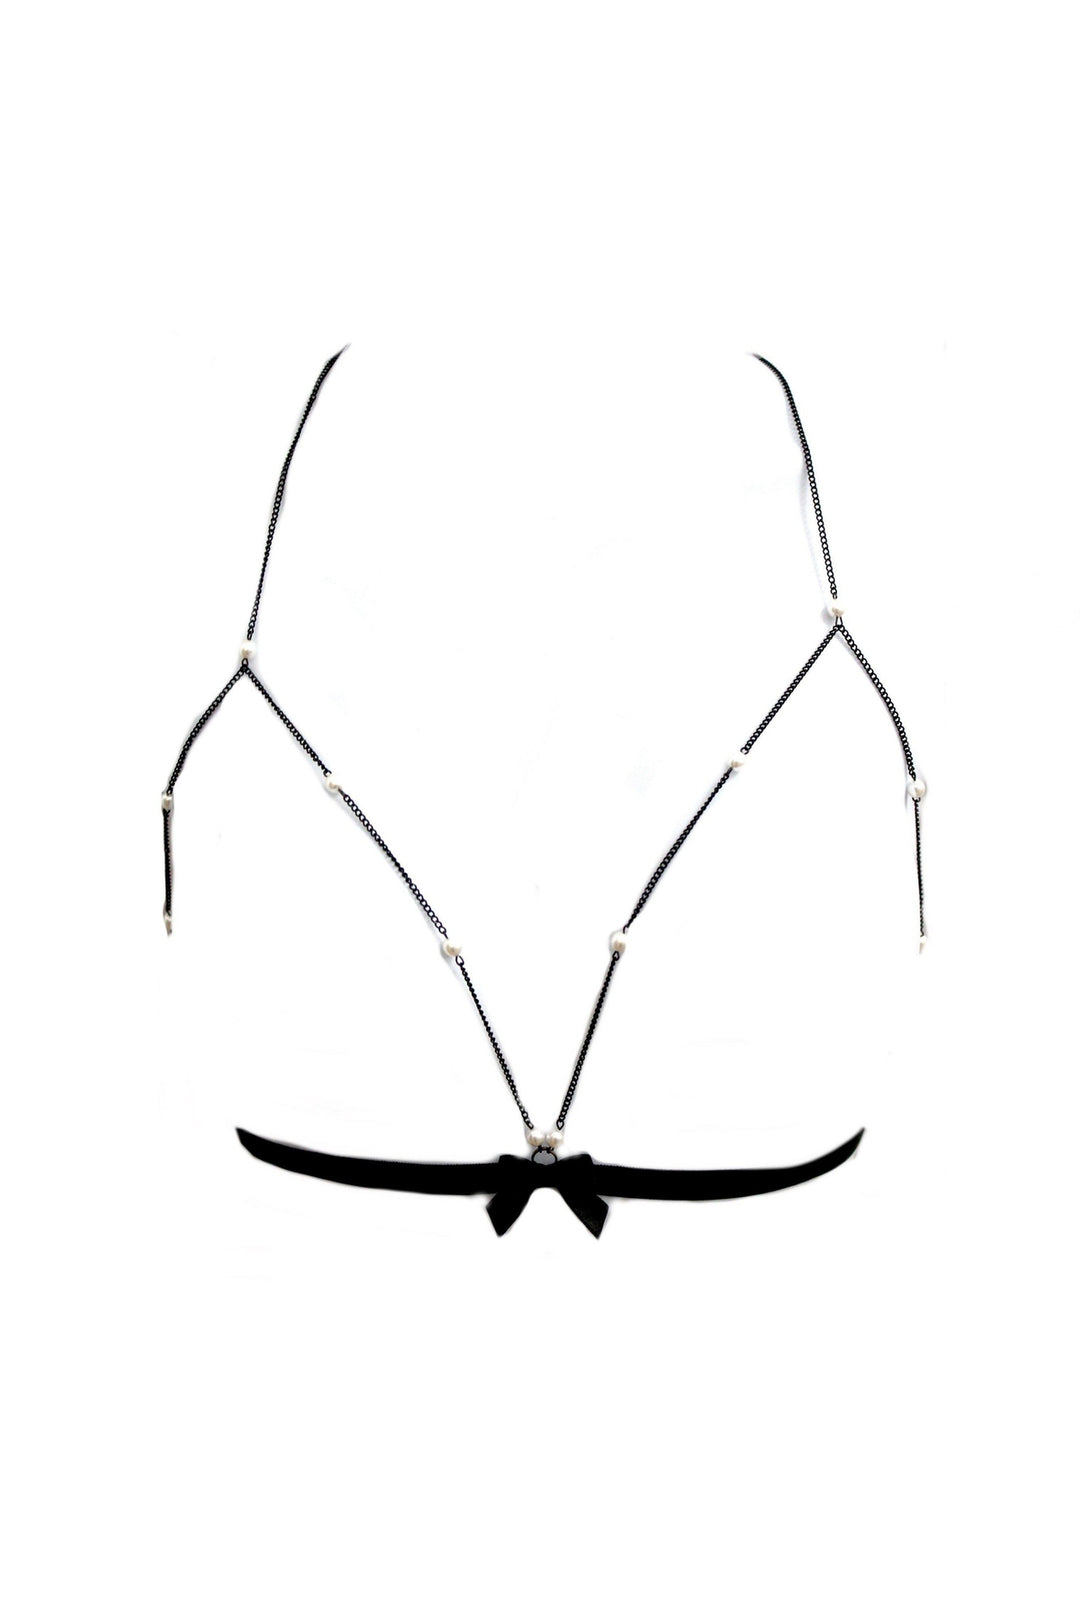 La Sophisticate Bratye-Body Jewelry-Tyes By Tara-Black-O/S-SEXYSHOES.COM